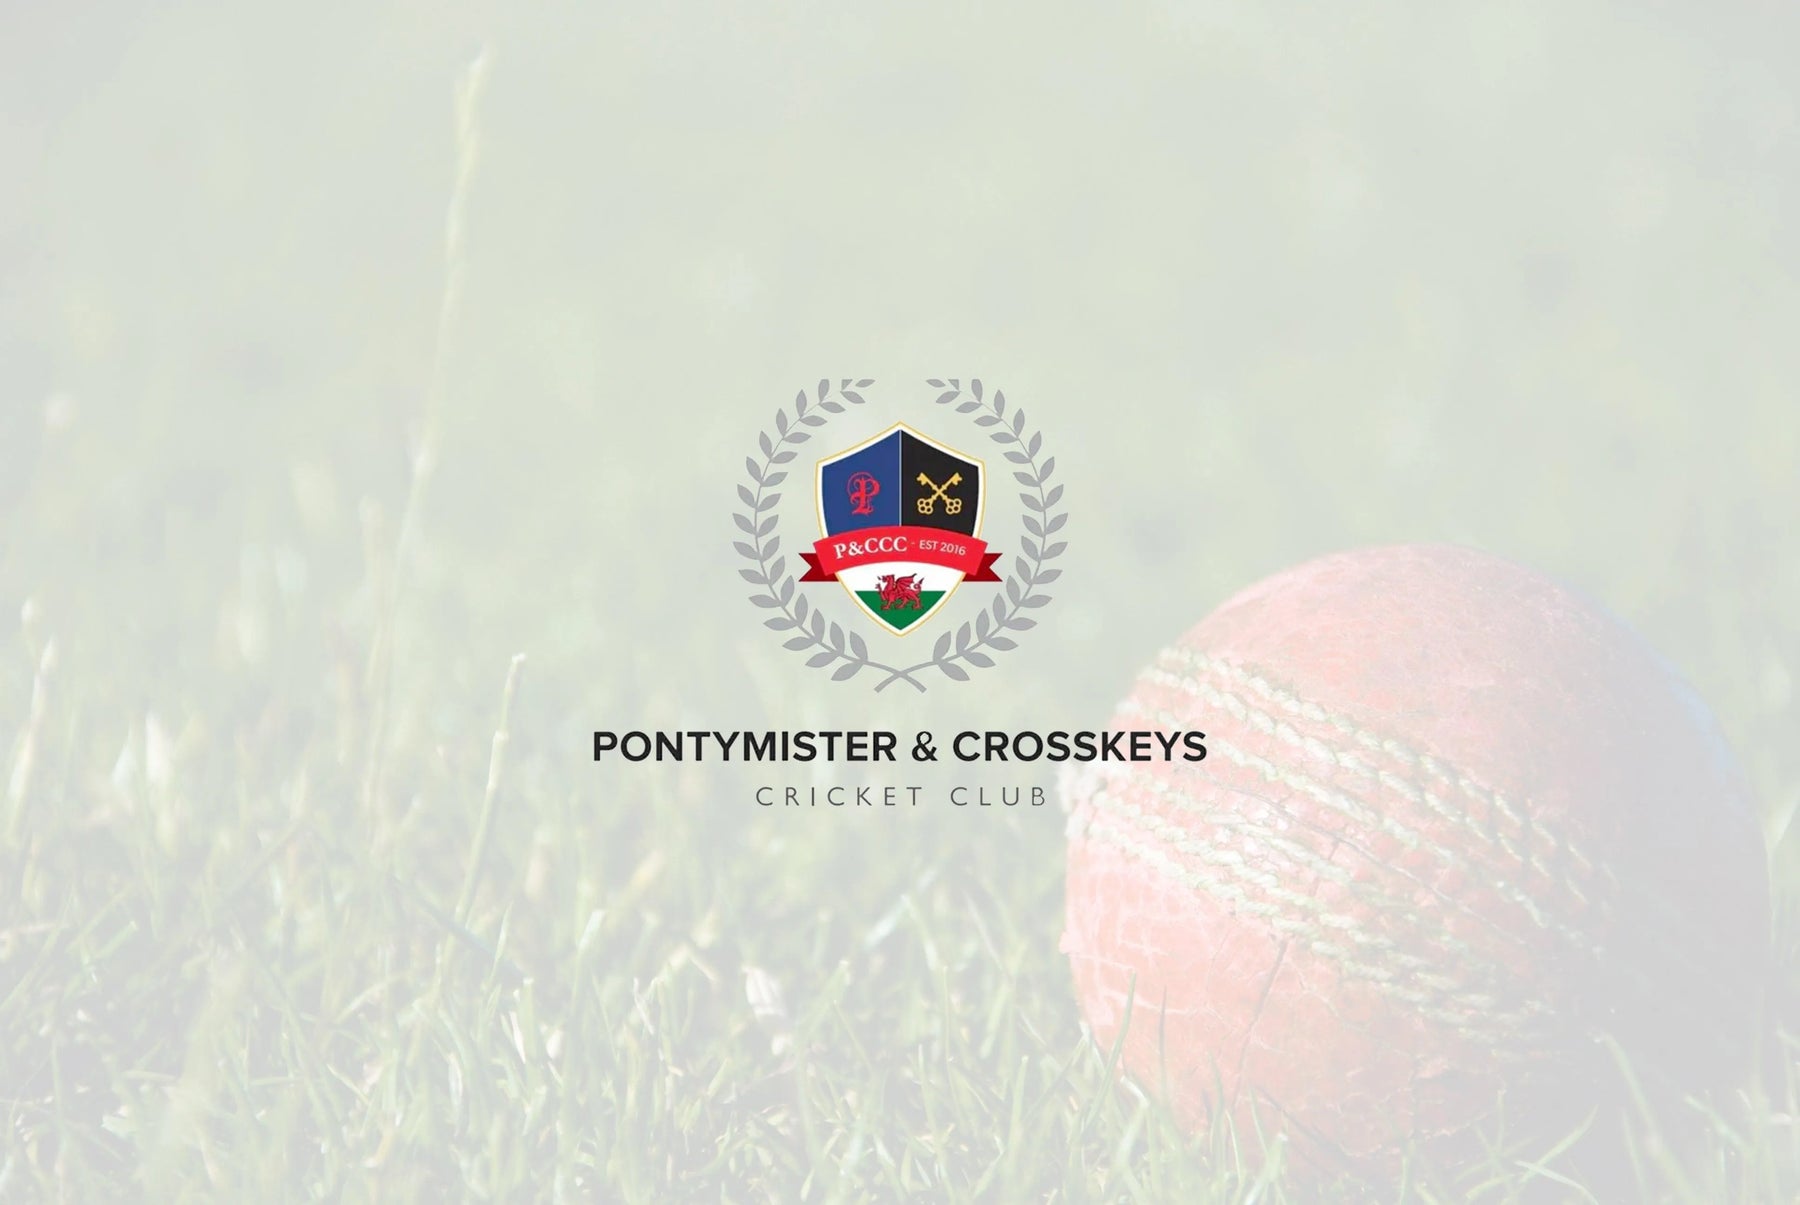 Pontymister & Crosskeys Cricket Club